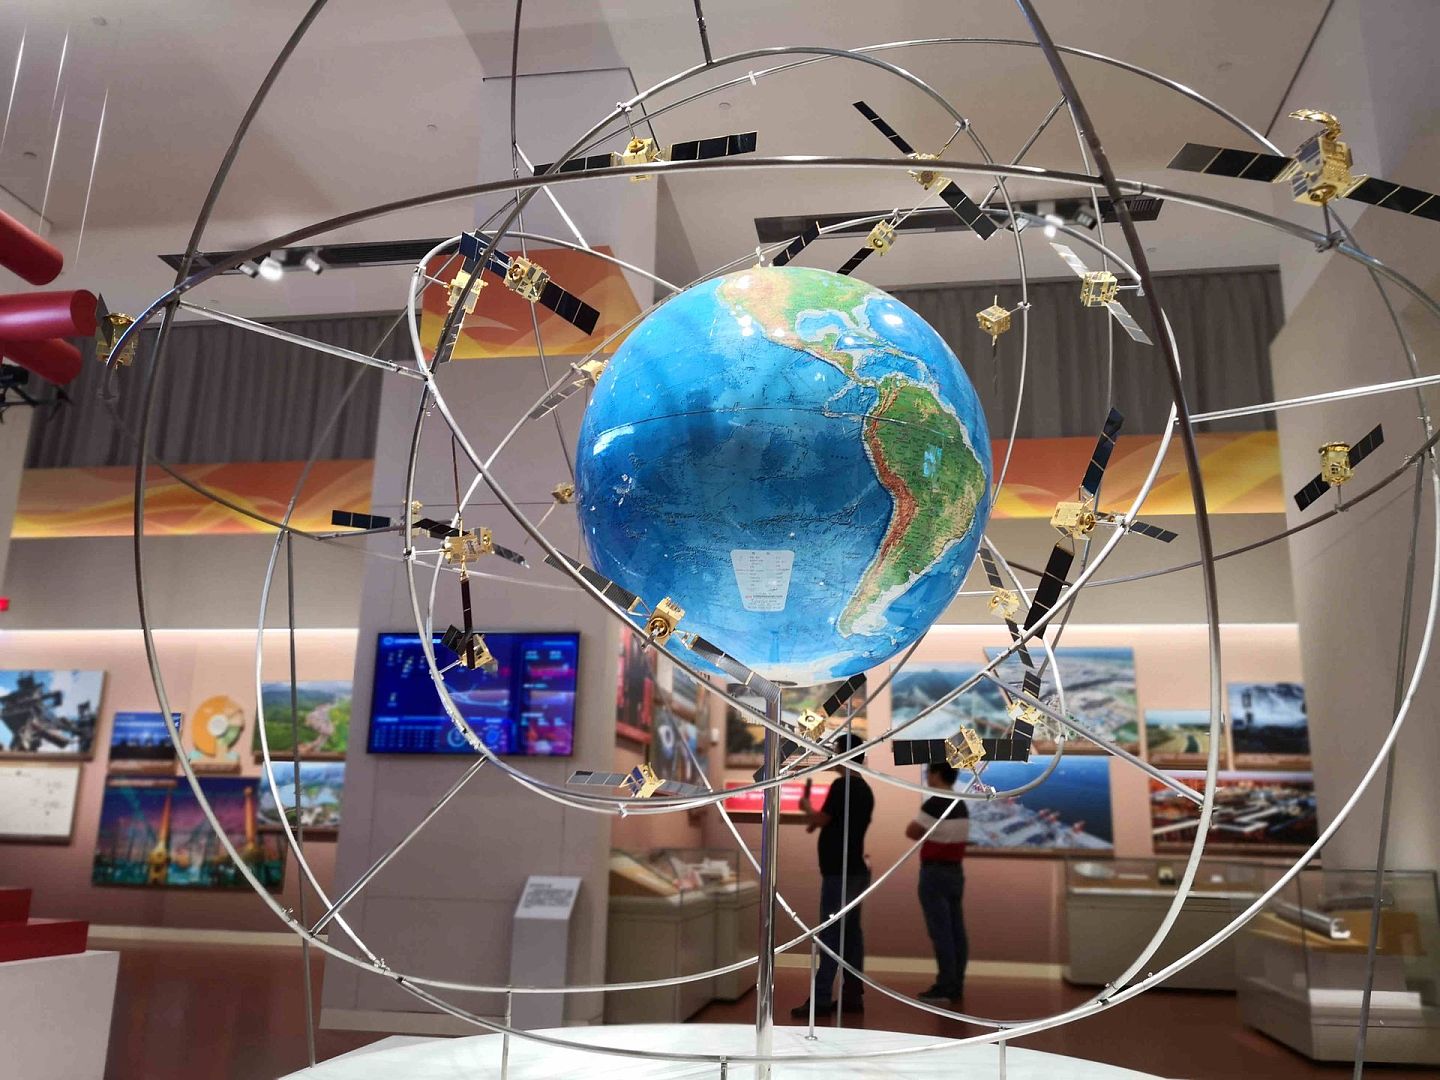 中国国家博物馆复兴之路展览中的北斗导航系统模型。 目前，中国北斗导航系统全球服务已经开通，中国武器制导由此告别对美国GPS系统的依赖。 （多维新闻）